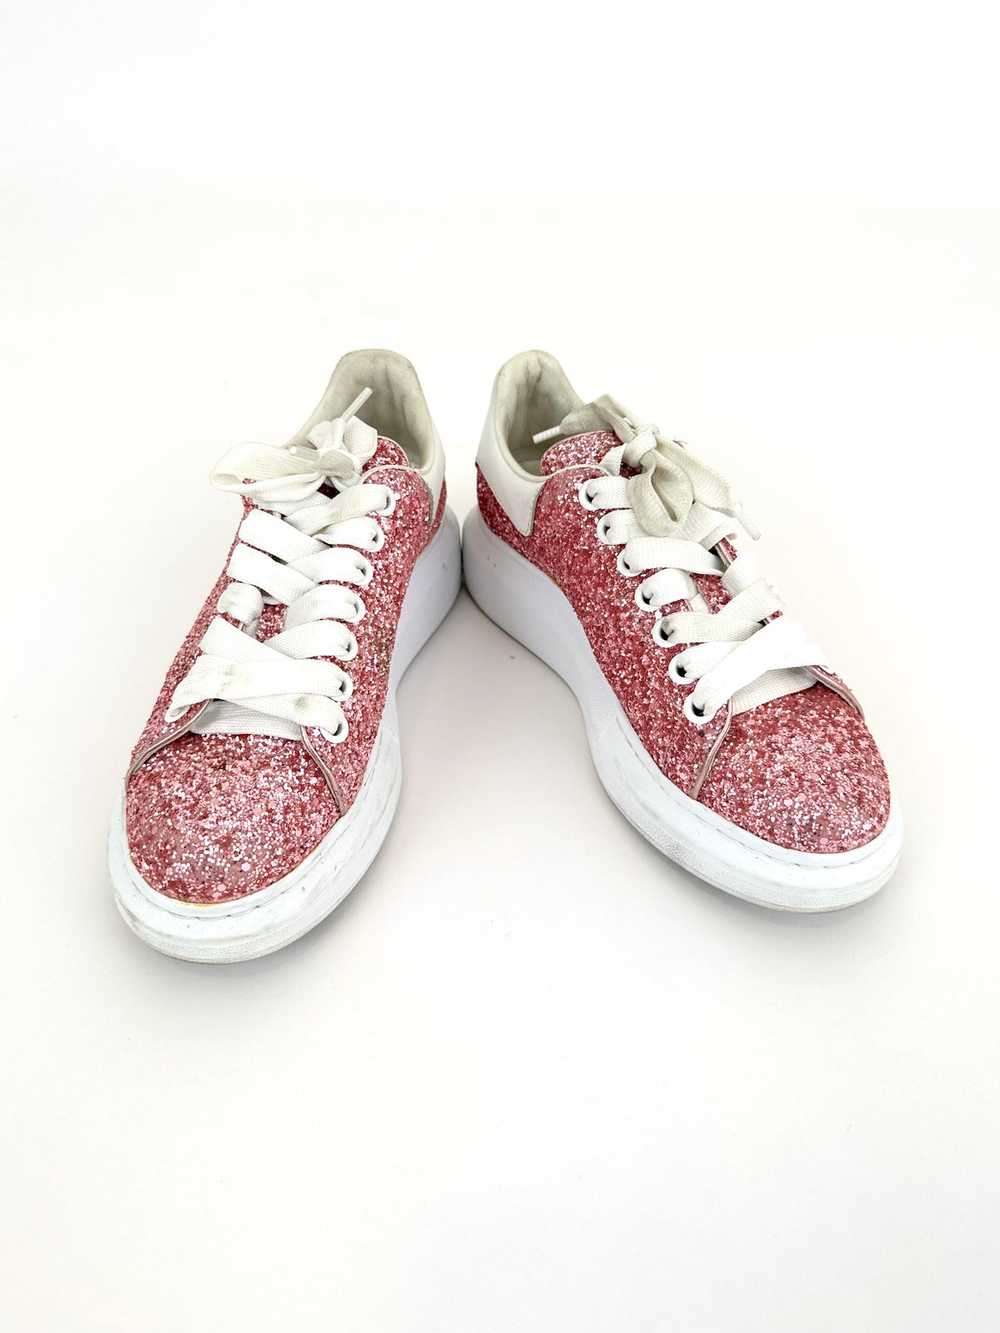 Alexander McQueen Glitter Platform Sneakers - image 1